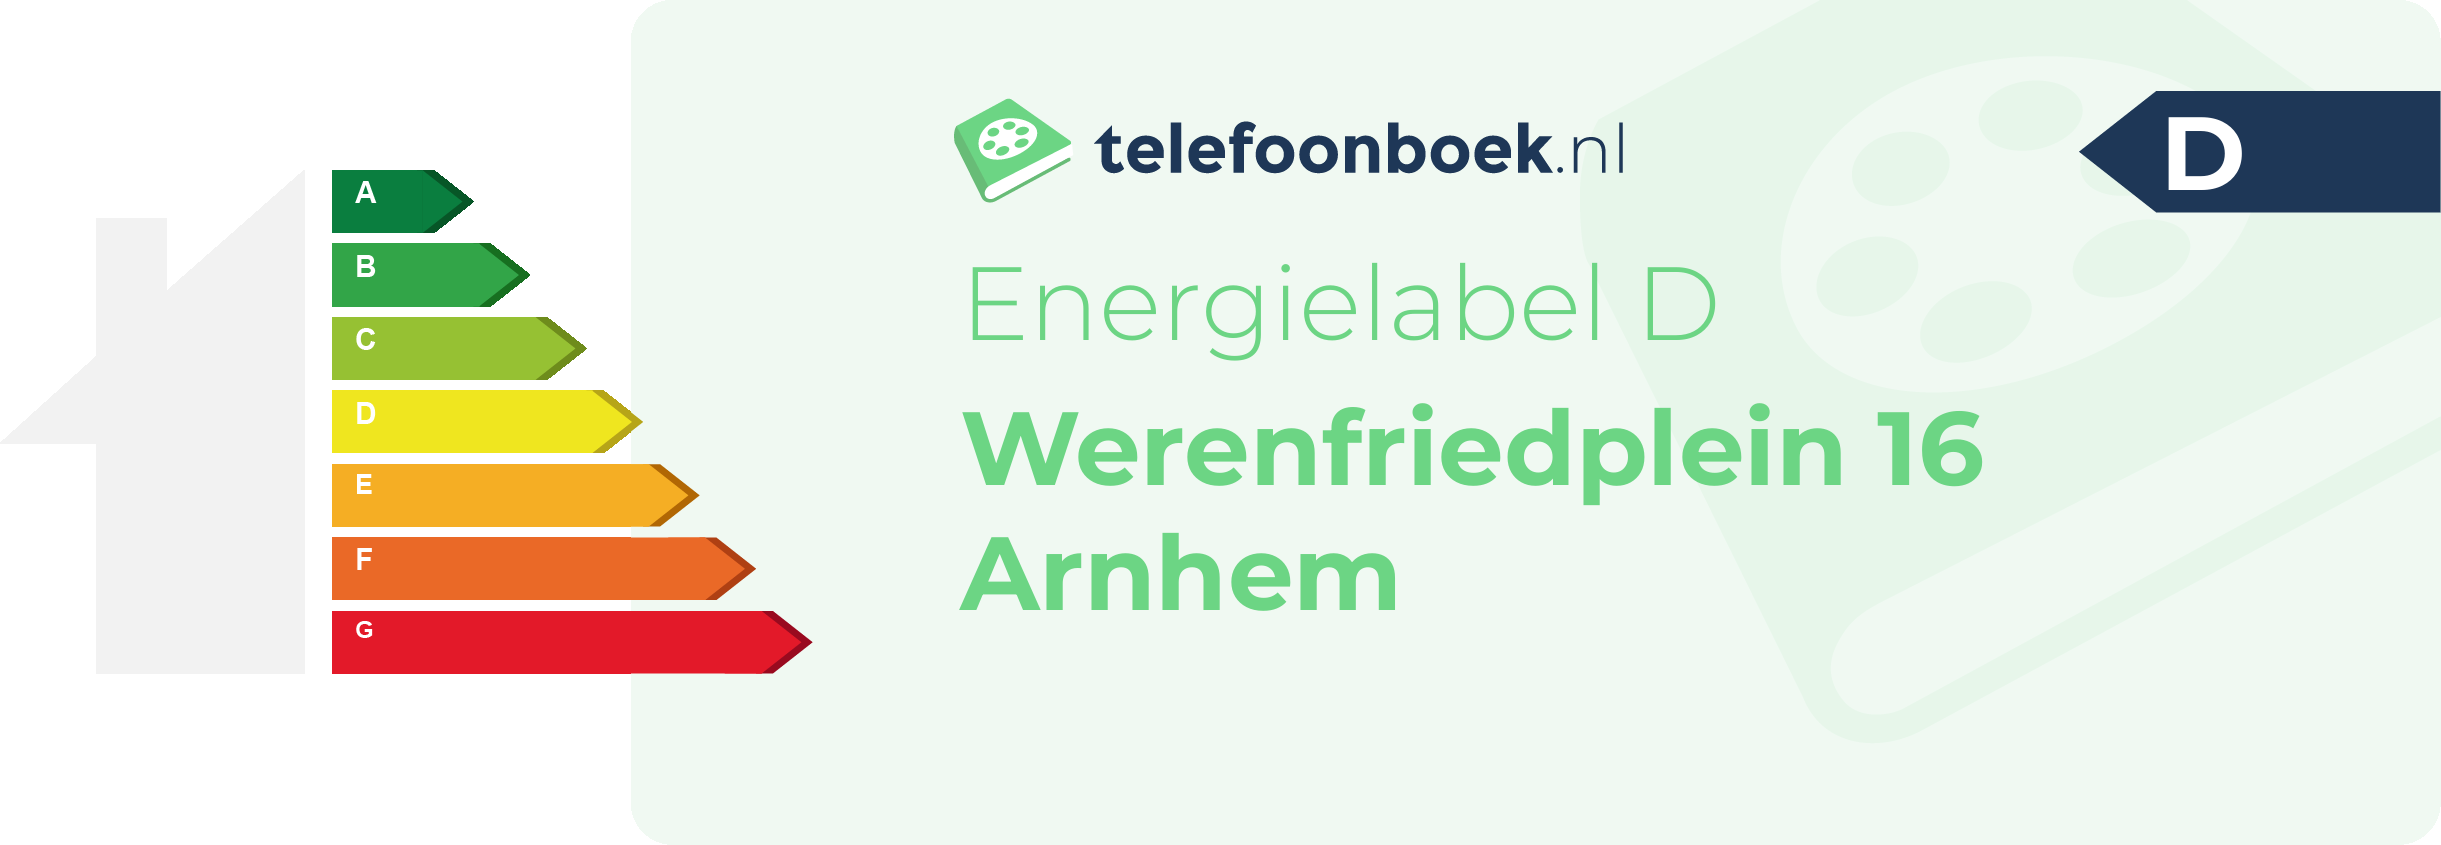 Energielabel Werenfriedplein 16 Arnhem